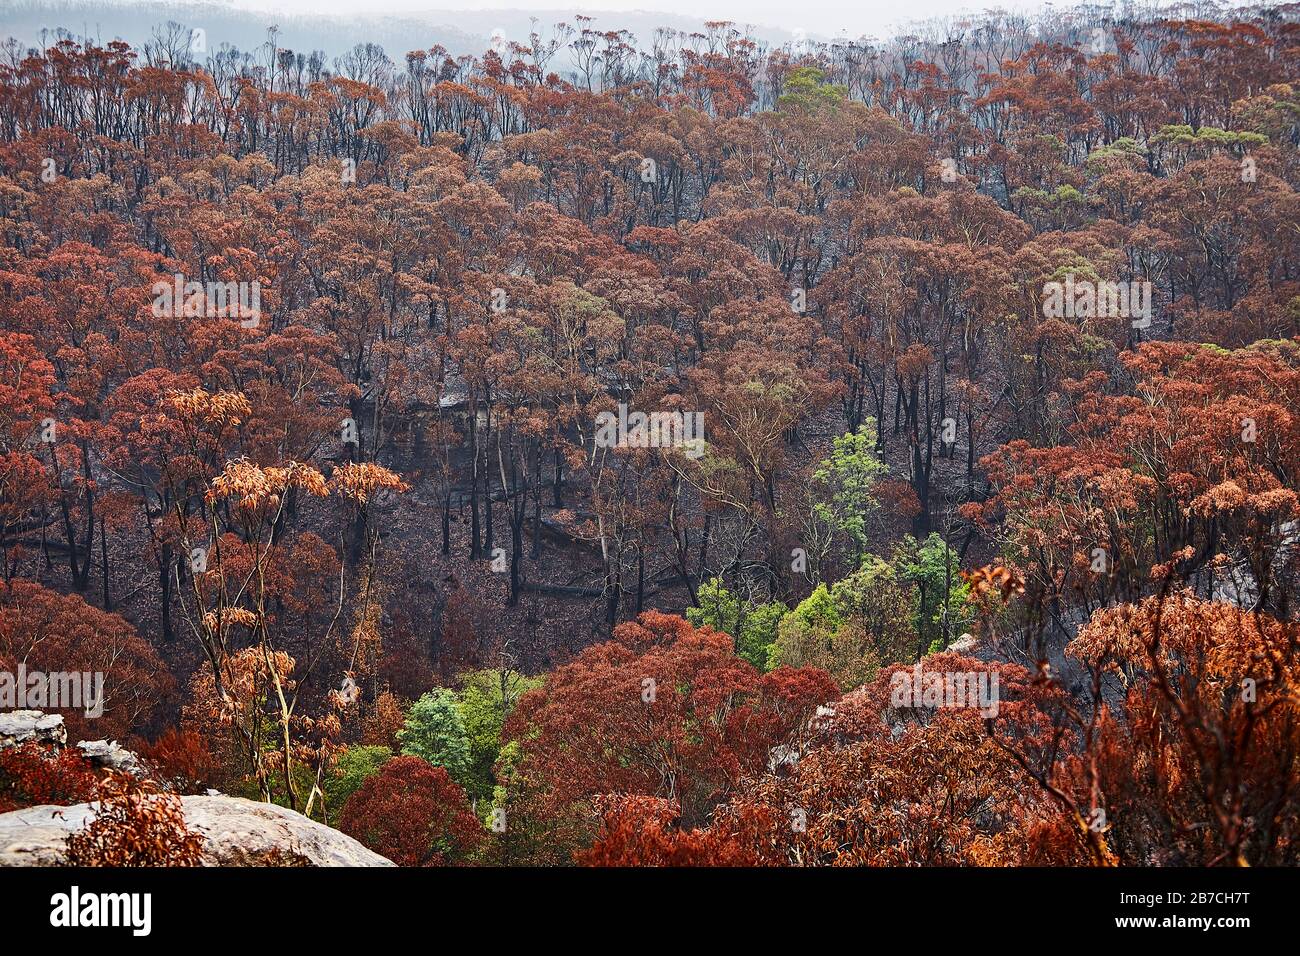 After the 2020 Bushfires - Landscapes of Devestation Stock Photo